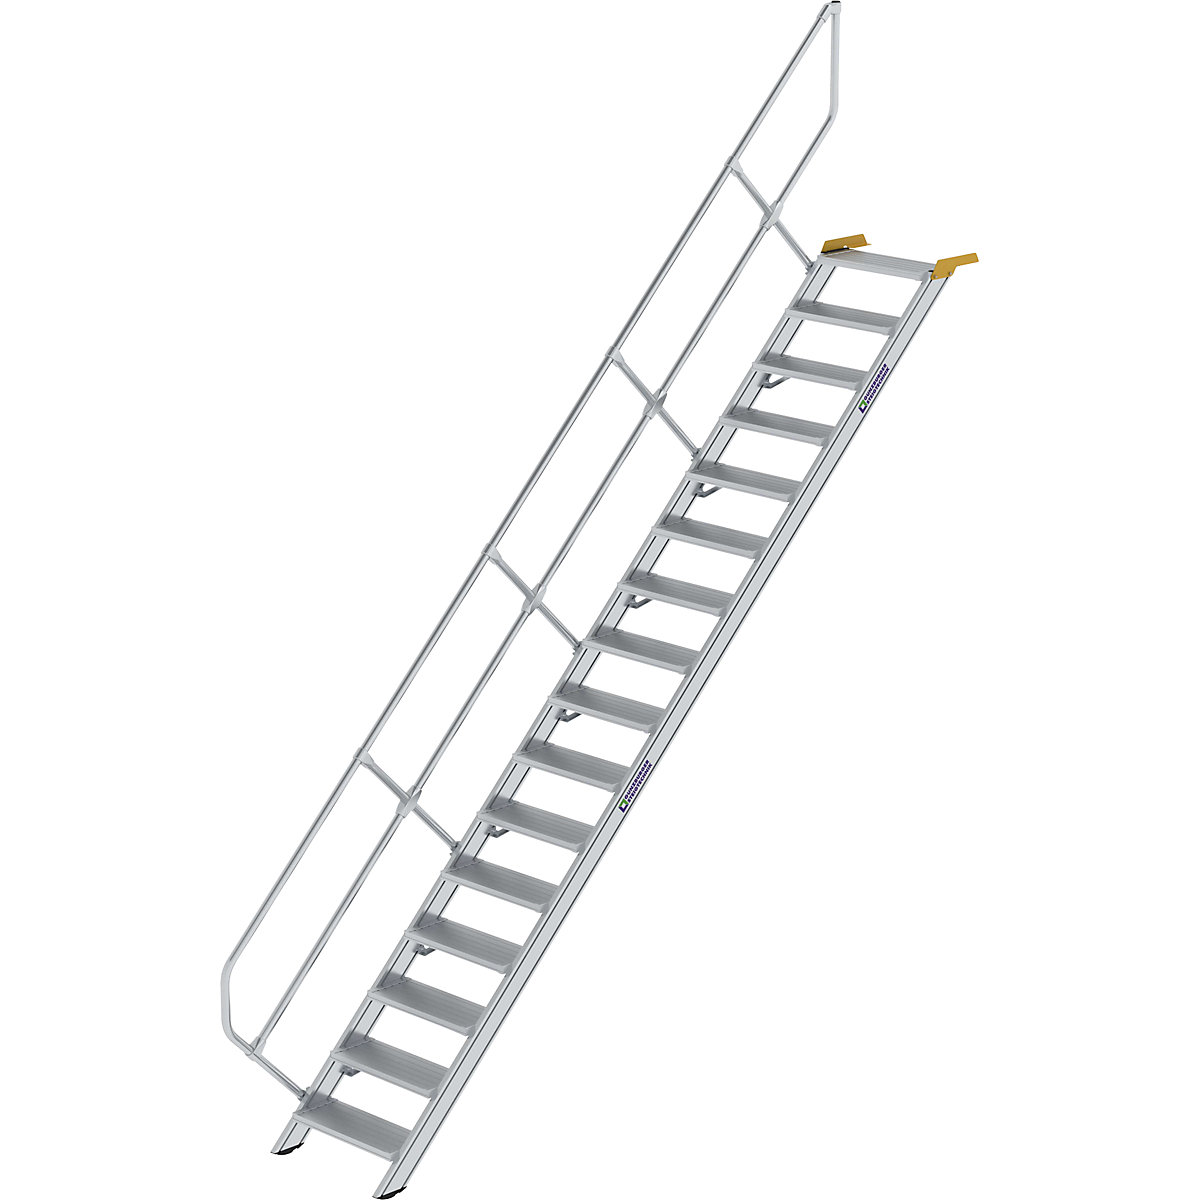 MUNK Industrietreppe, Alu-Stufen, Stufenbreite 800 mm, 16 Stufen